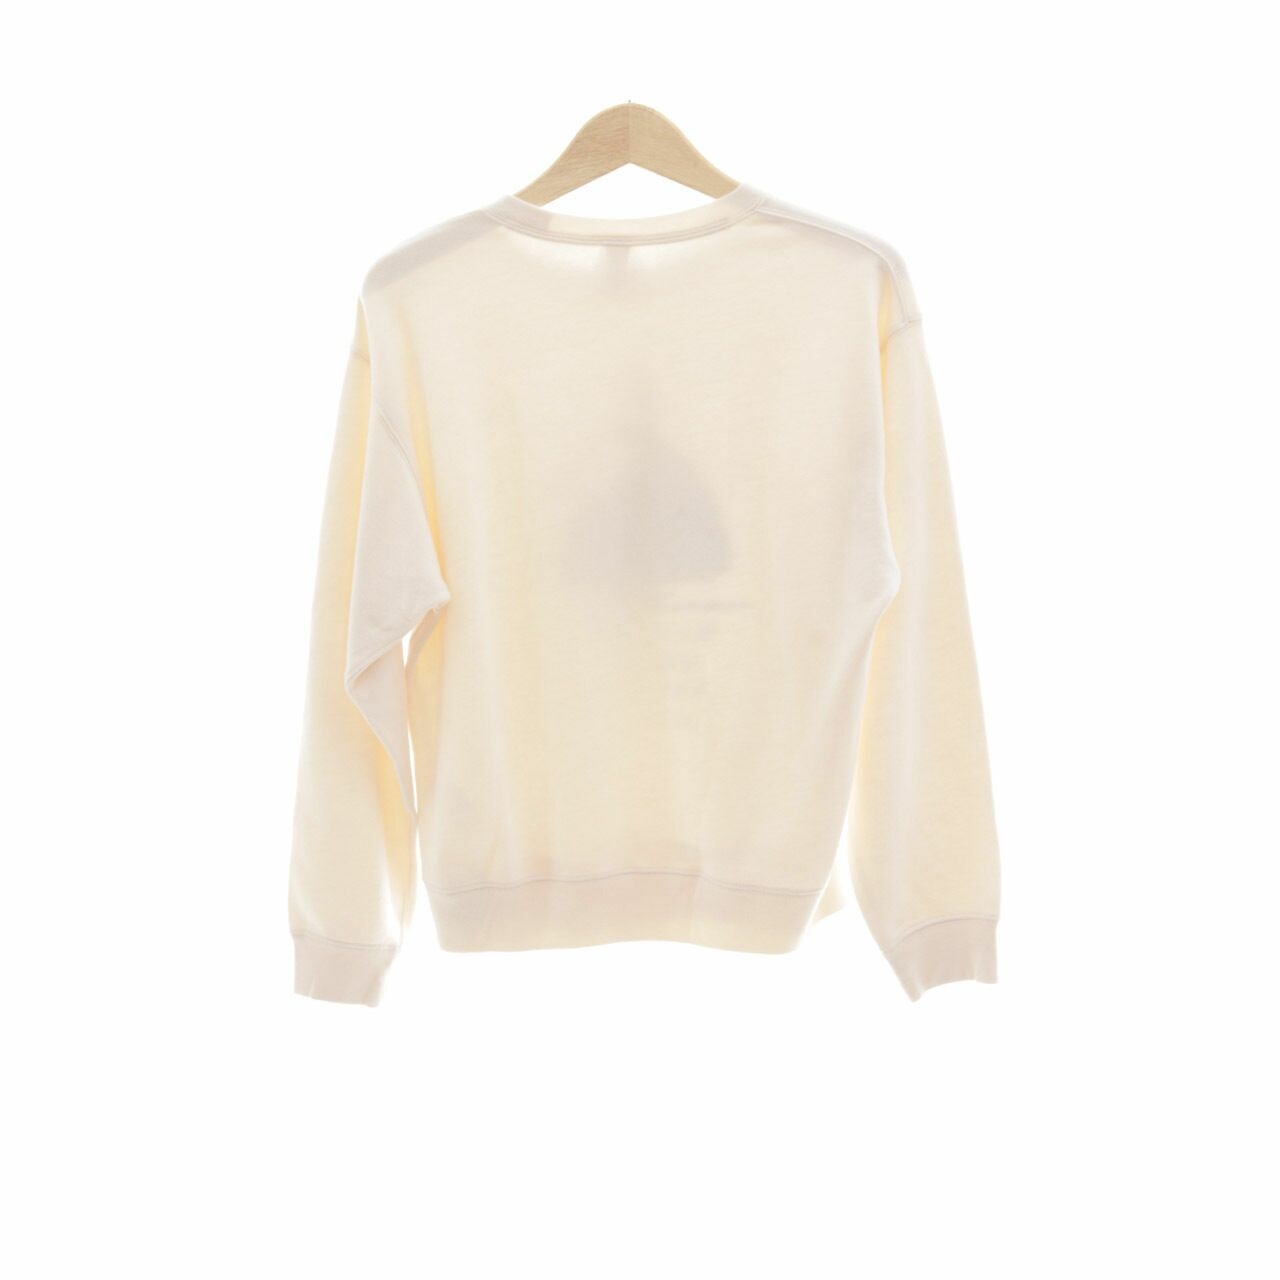 UNIQLO Cream Sweater